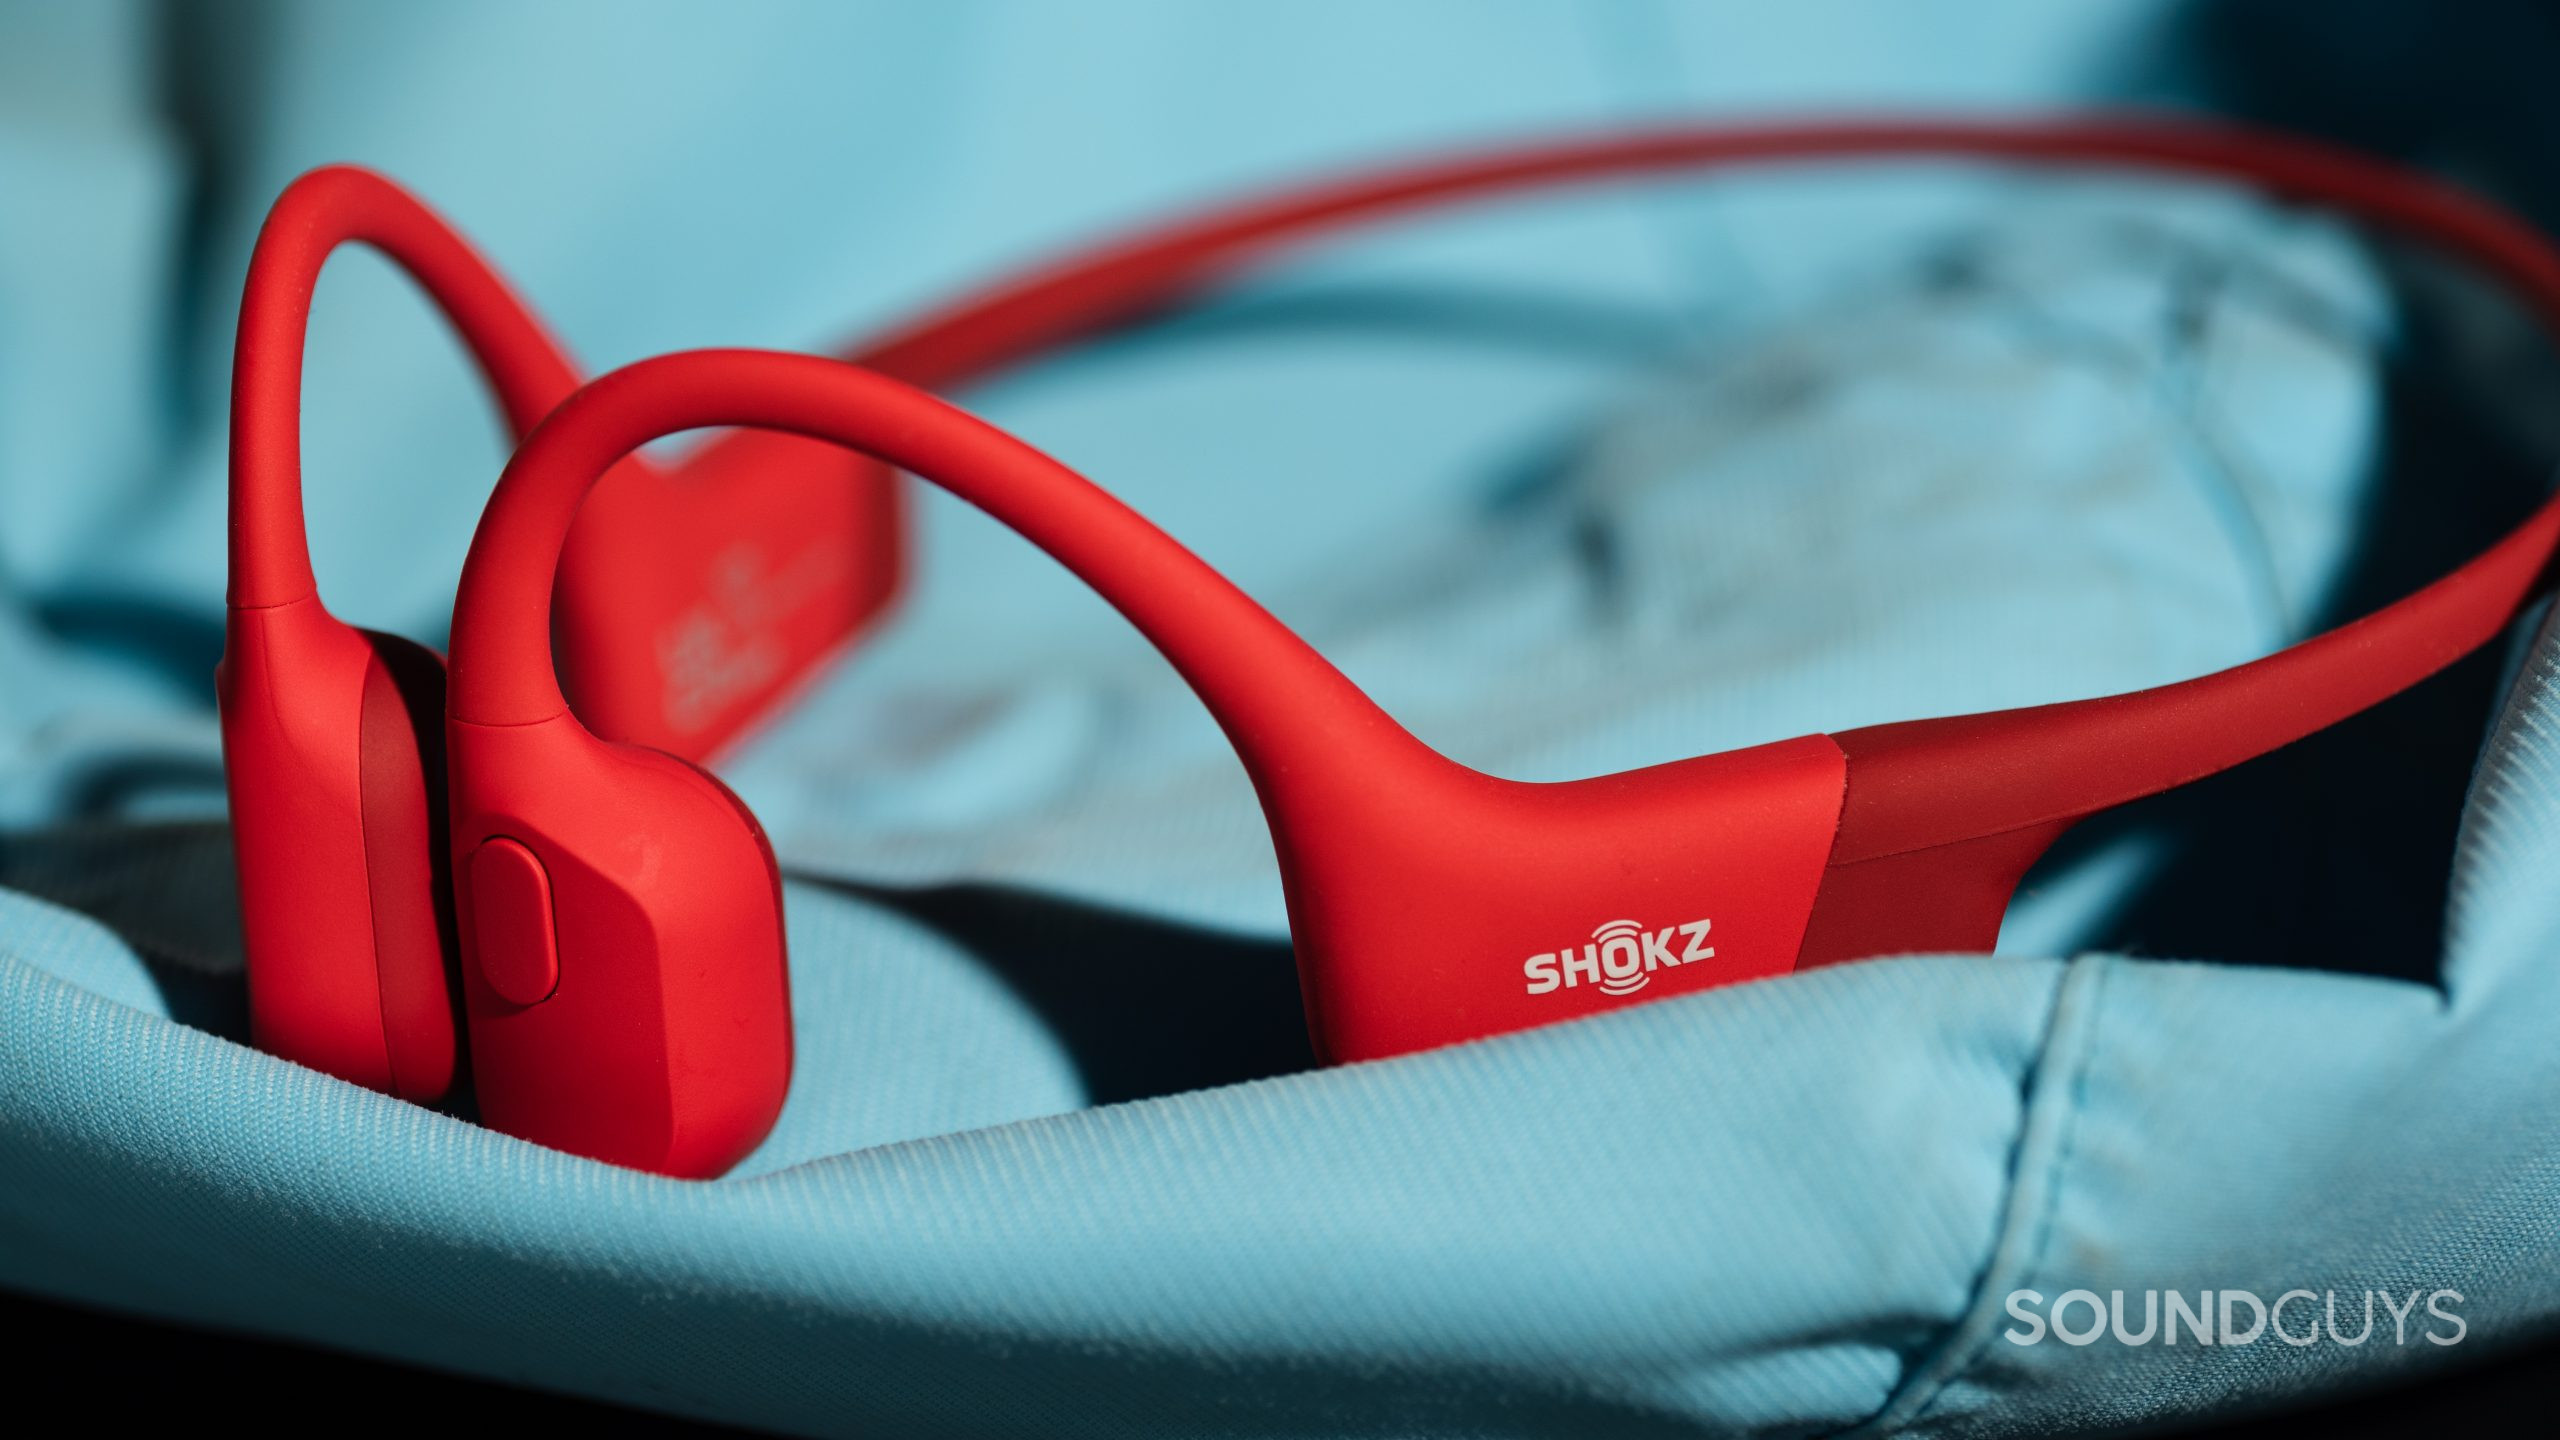 The Shokz OpenRun bone conduction headphones' multi-function button.